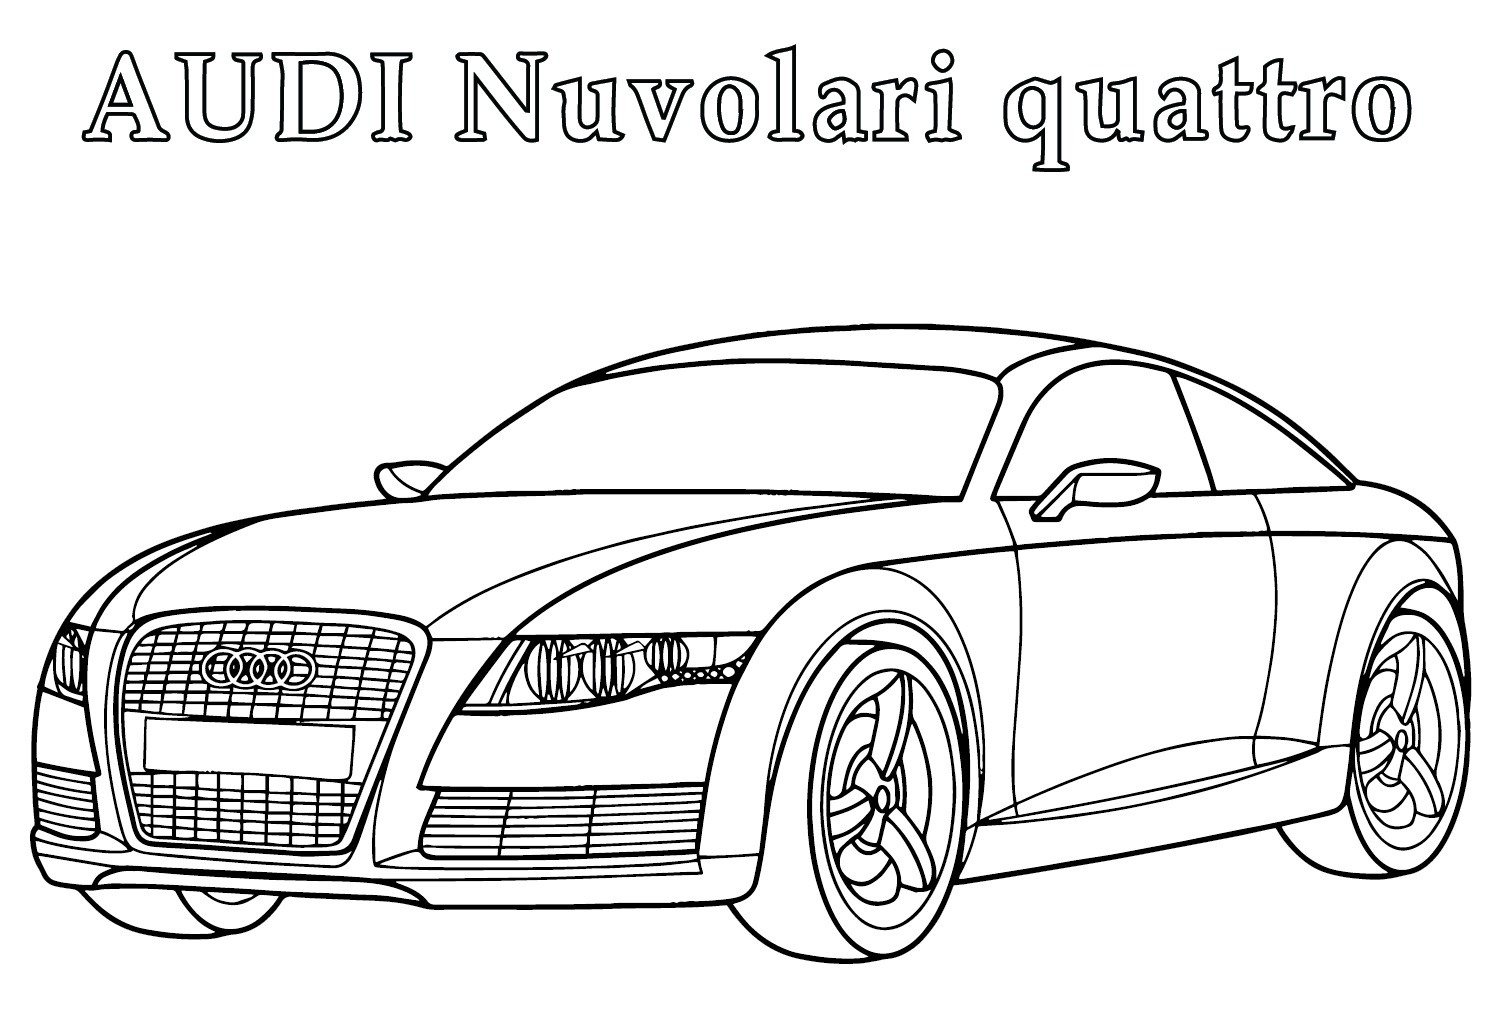 Audi Nuvolari Quattro kleurplaat van Audi